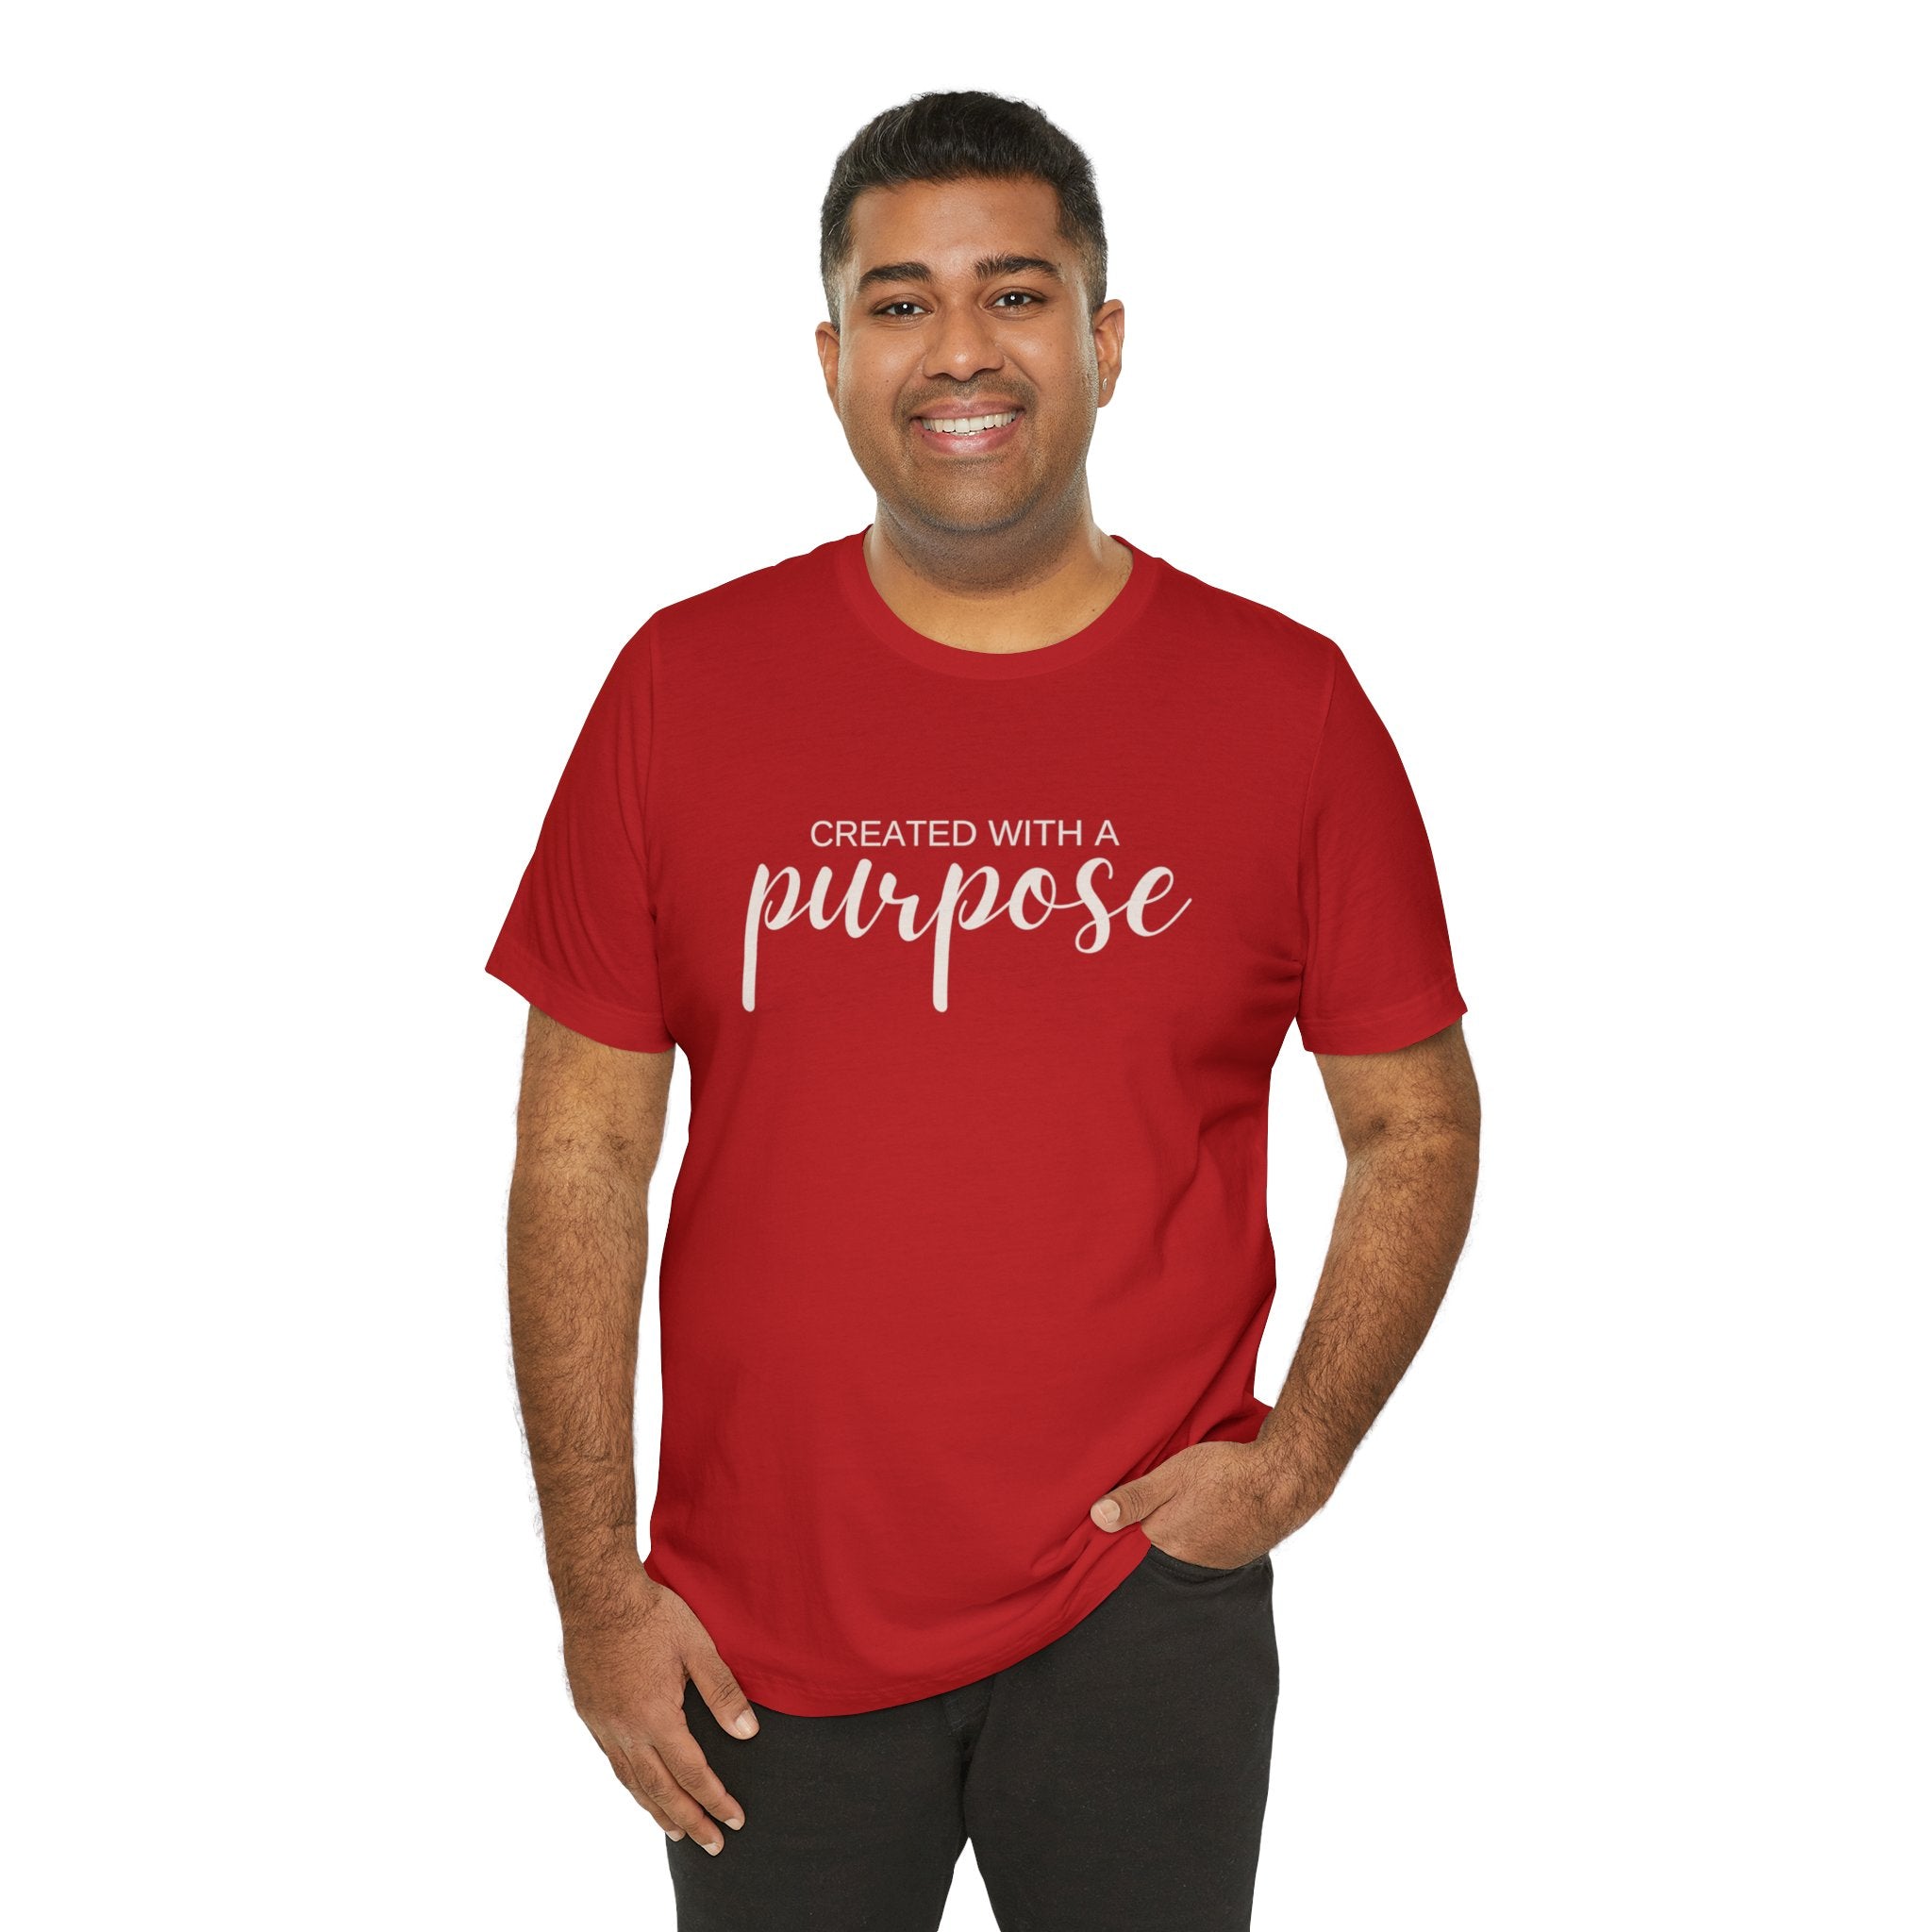 "Purpose" Unisex Jersey Short Sleeve Tee